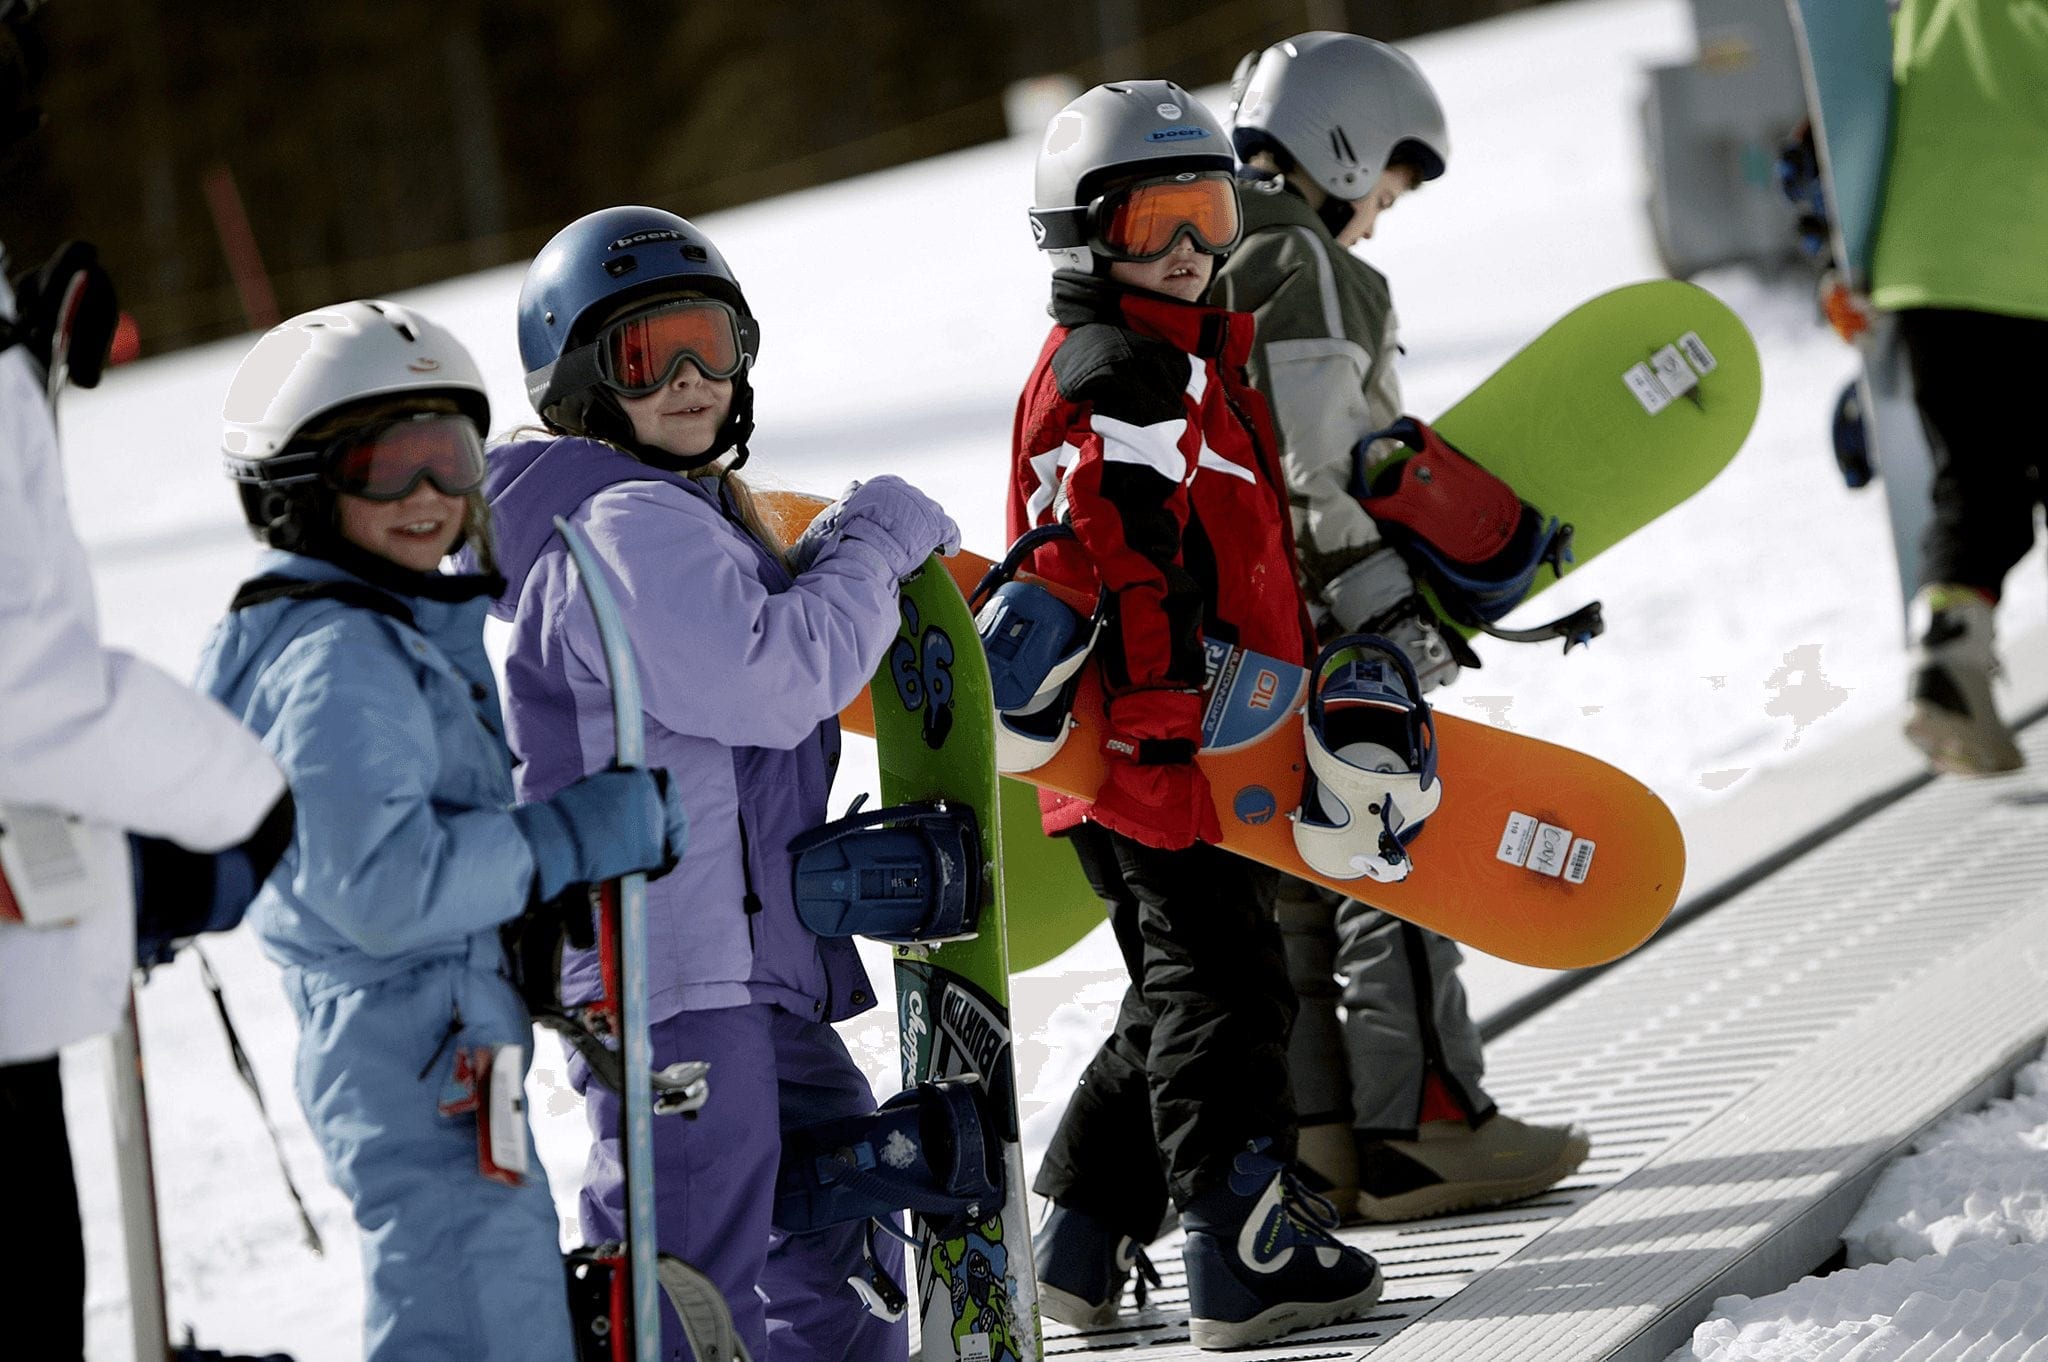 Kids at Ski School in Breckenridge